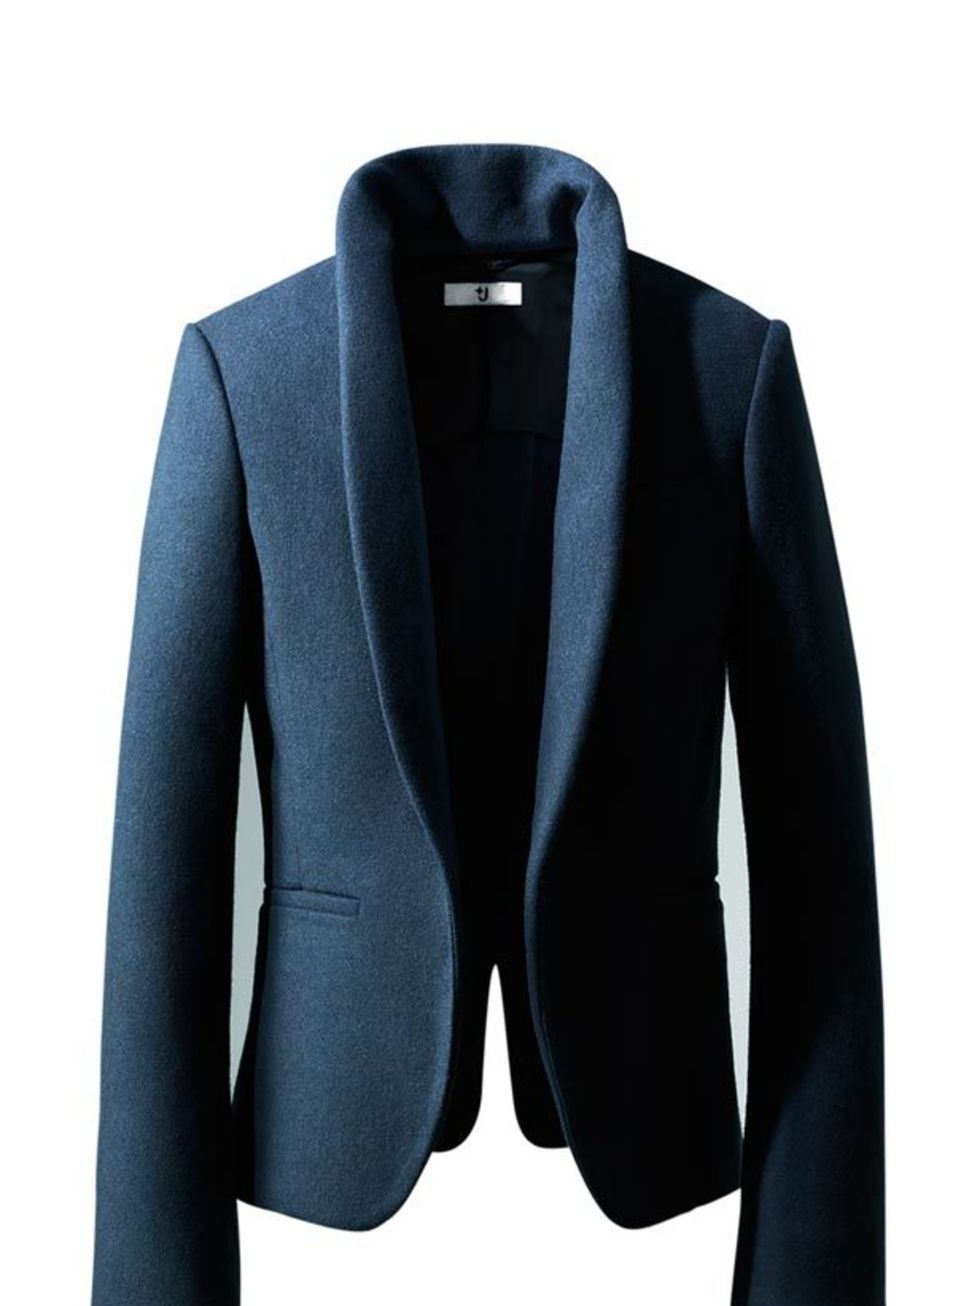 <p> </p><p>Jil Sanders latest collection for Uniqlo has just hit stores and among the covetable winter coats are some great office-appropriate blazers. <a href="http://shop.uniqlo.com/uk/store/clothing/plusj/women/">+J Uniqlo</a> navy blazer, £59.99</p>